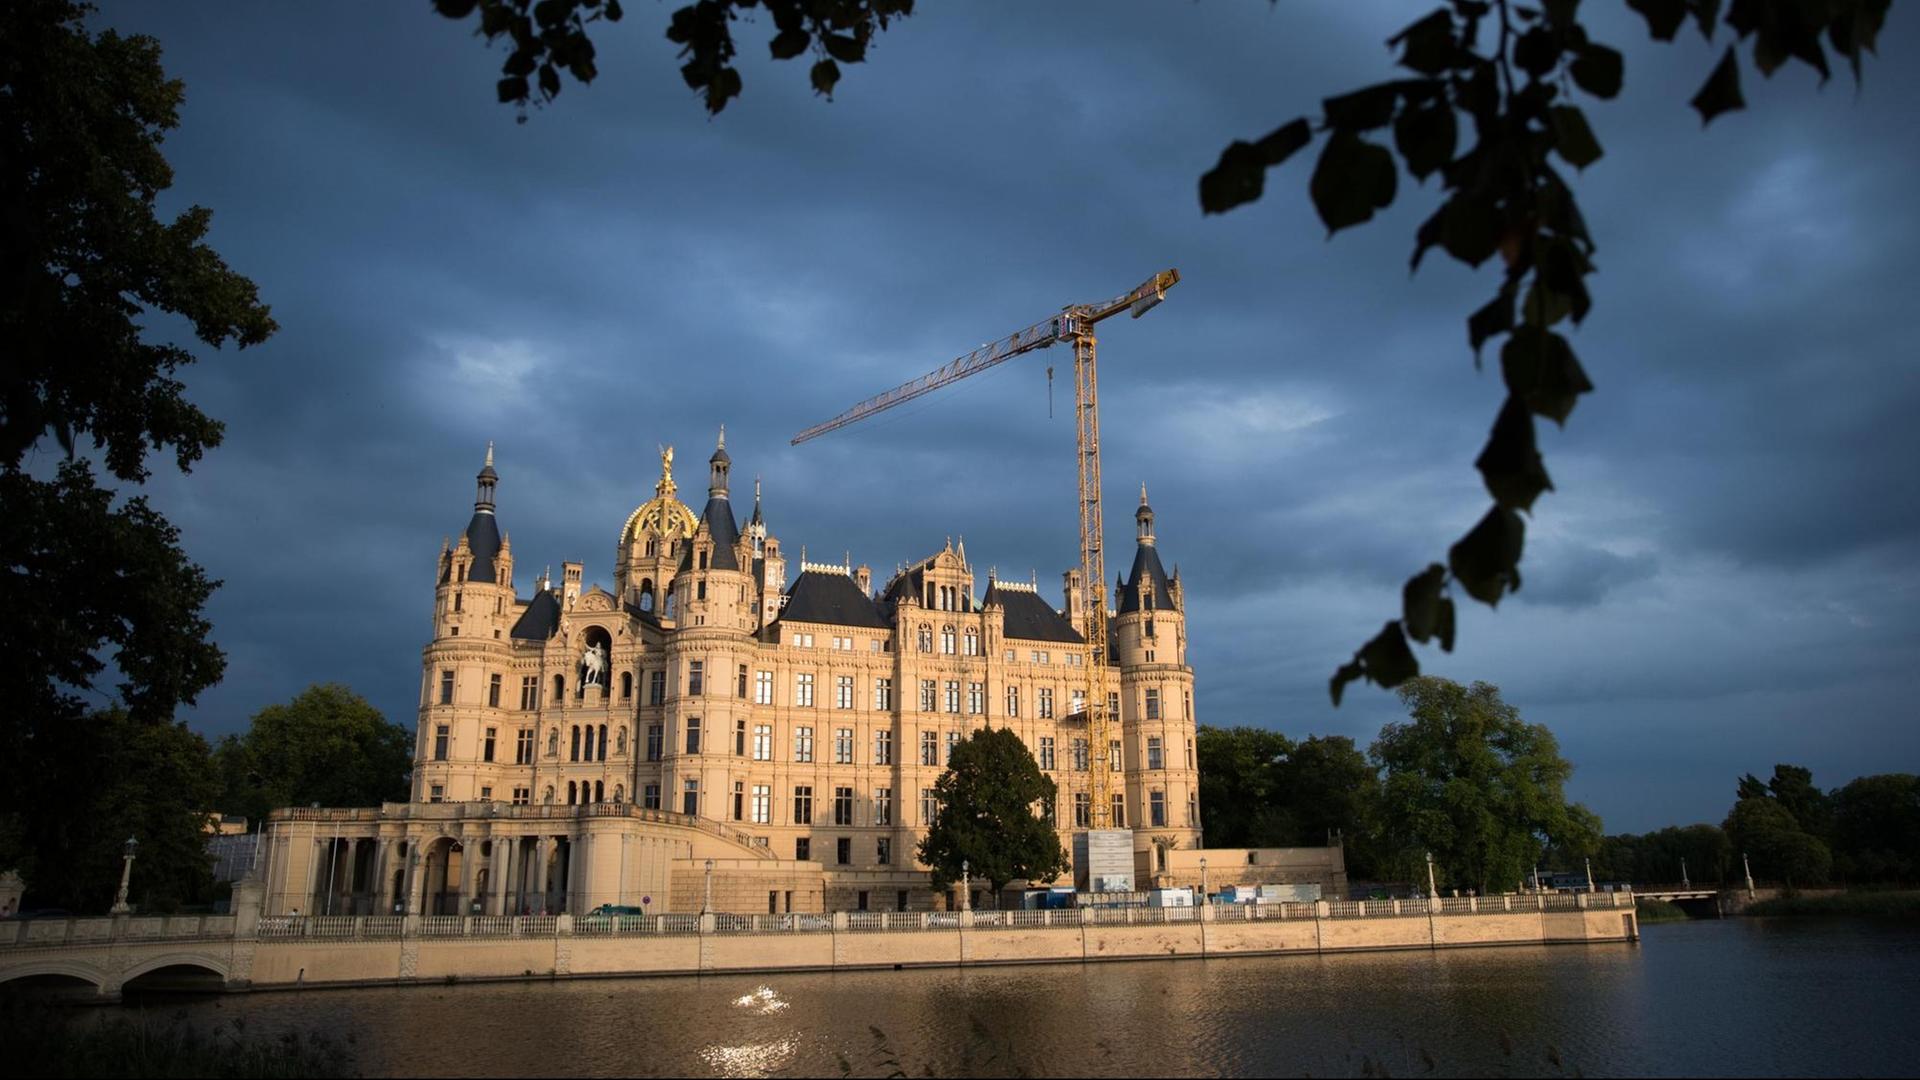 Blick auf das Schweriner Schloss vor wolkenverhangenem Himmel